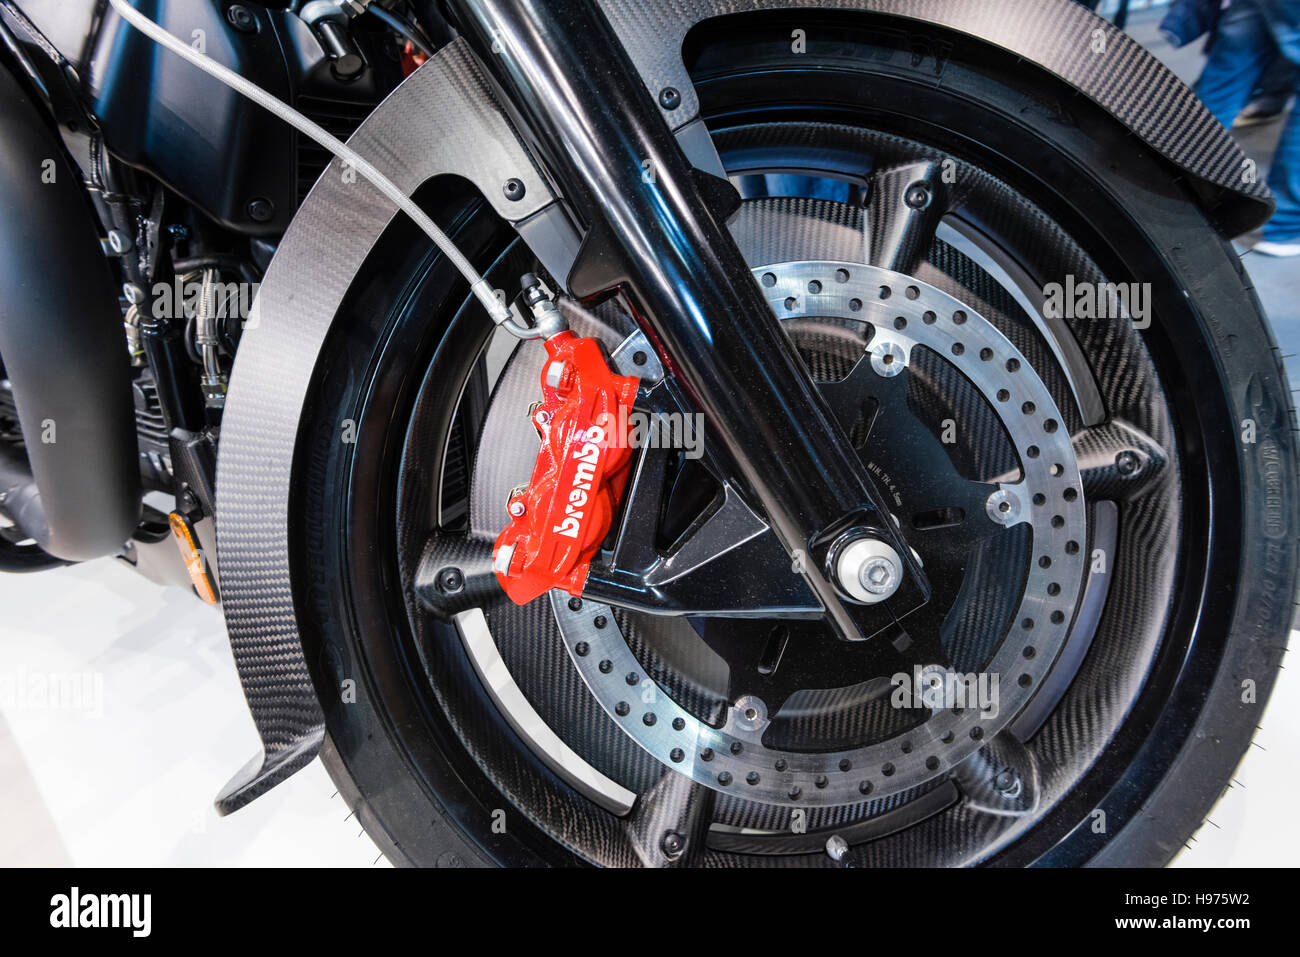 Zürich, Schweiz - 21. Februar 2016: Vorderrad und Brembo Bremsanlage von  Moto Guzzi MGX-21 Motorrad ausgestellt auf größte Motorradmesse Swiss Moto  Zürich, Schweiz Stockfotografie - Alamy